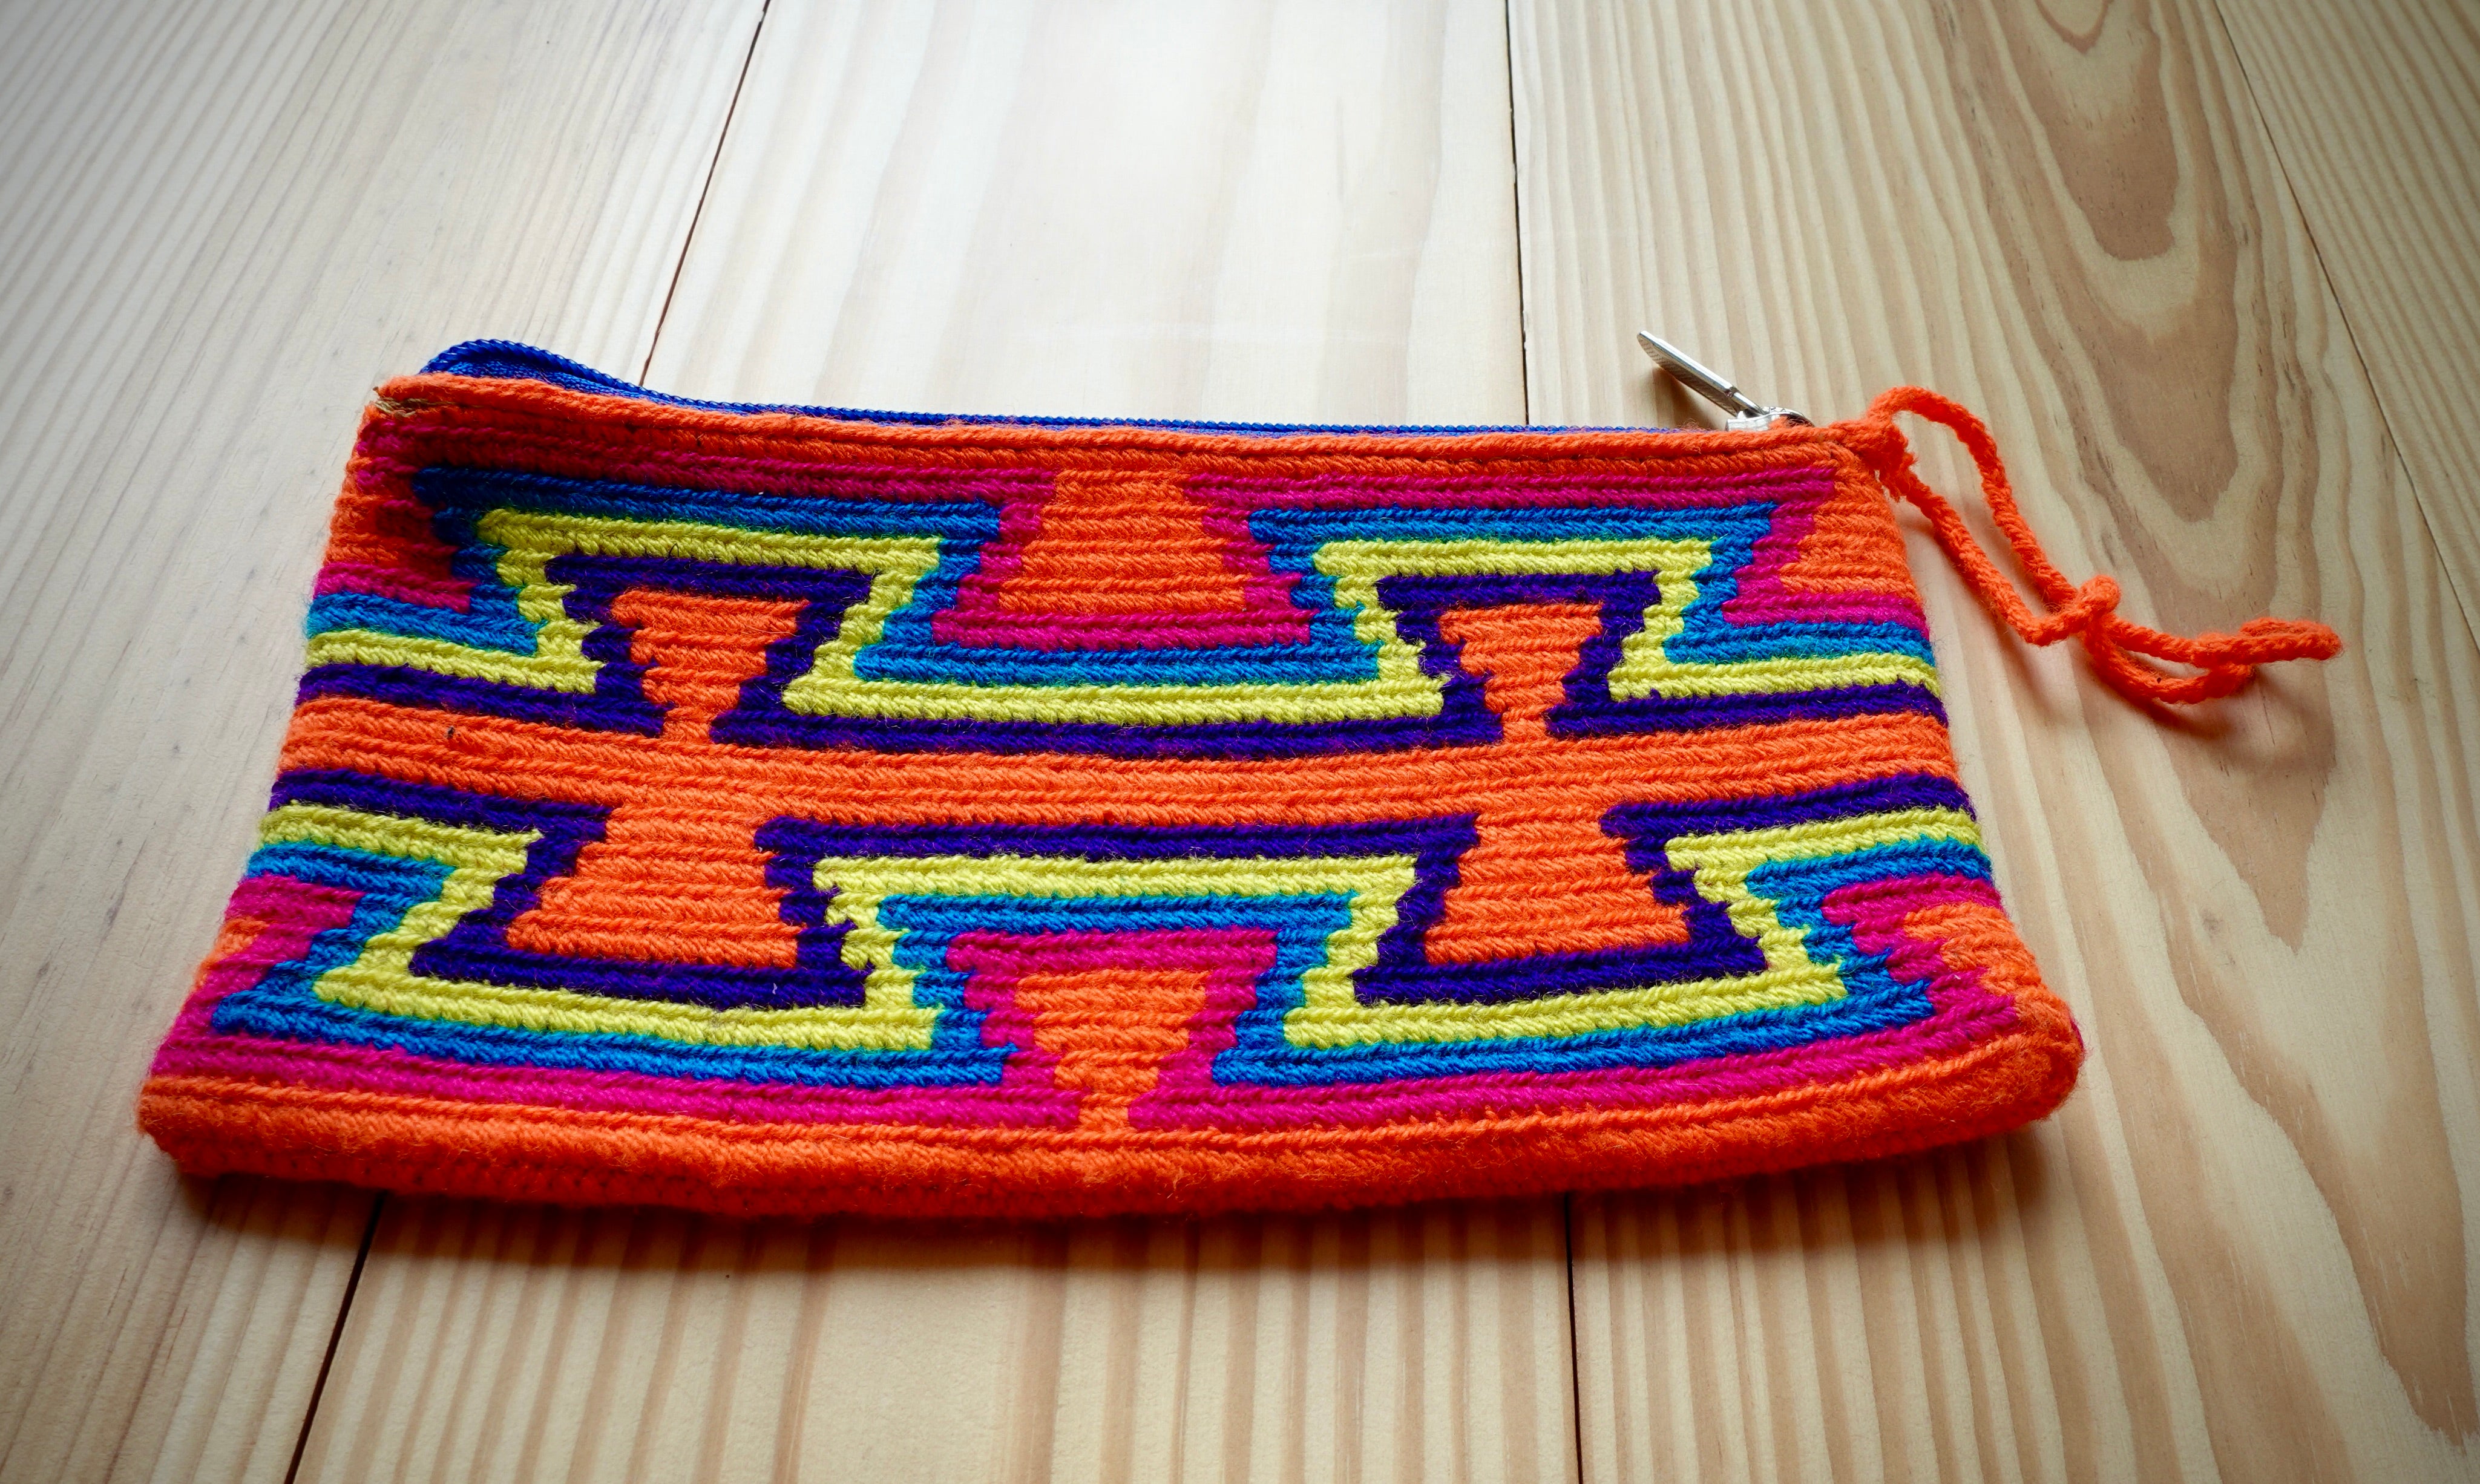 Aamaizniziqui Wayuu Handmade Wristlet Clutch, Medium